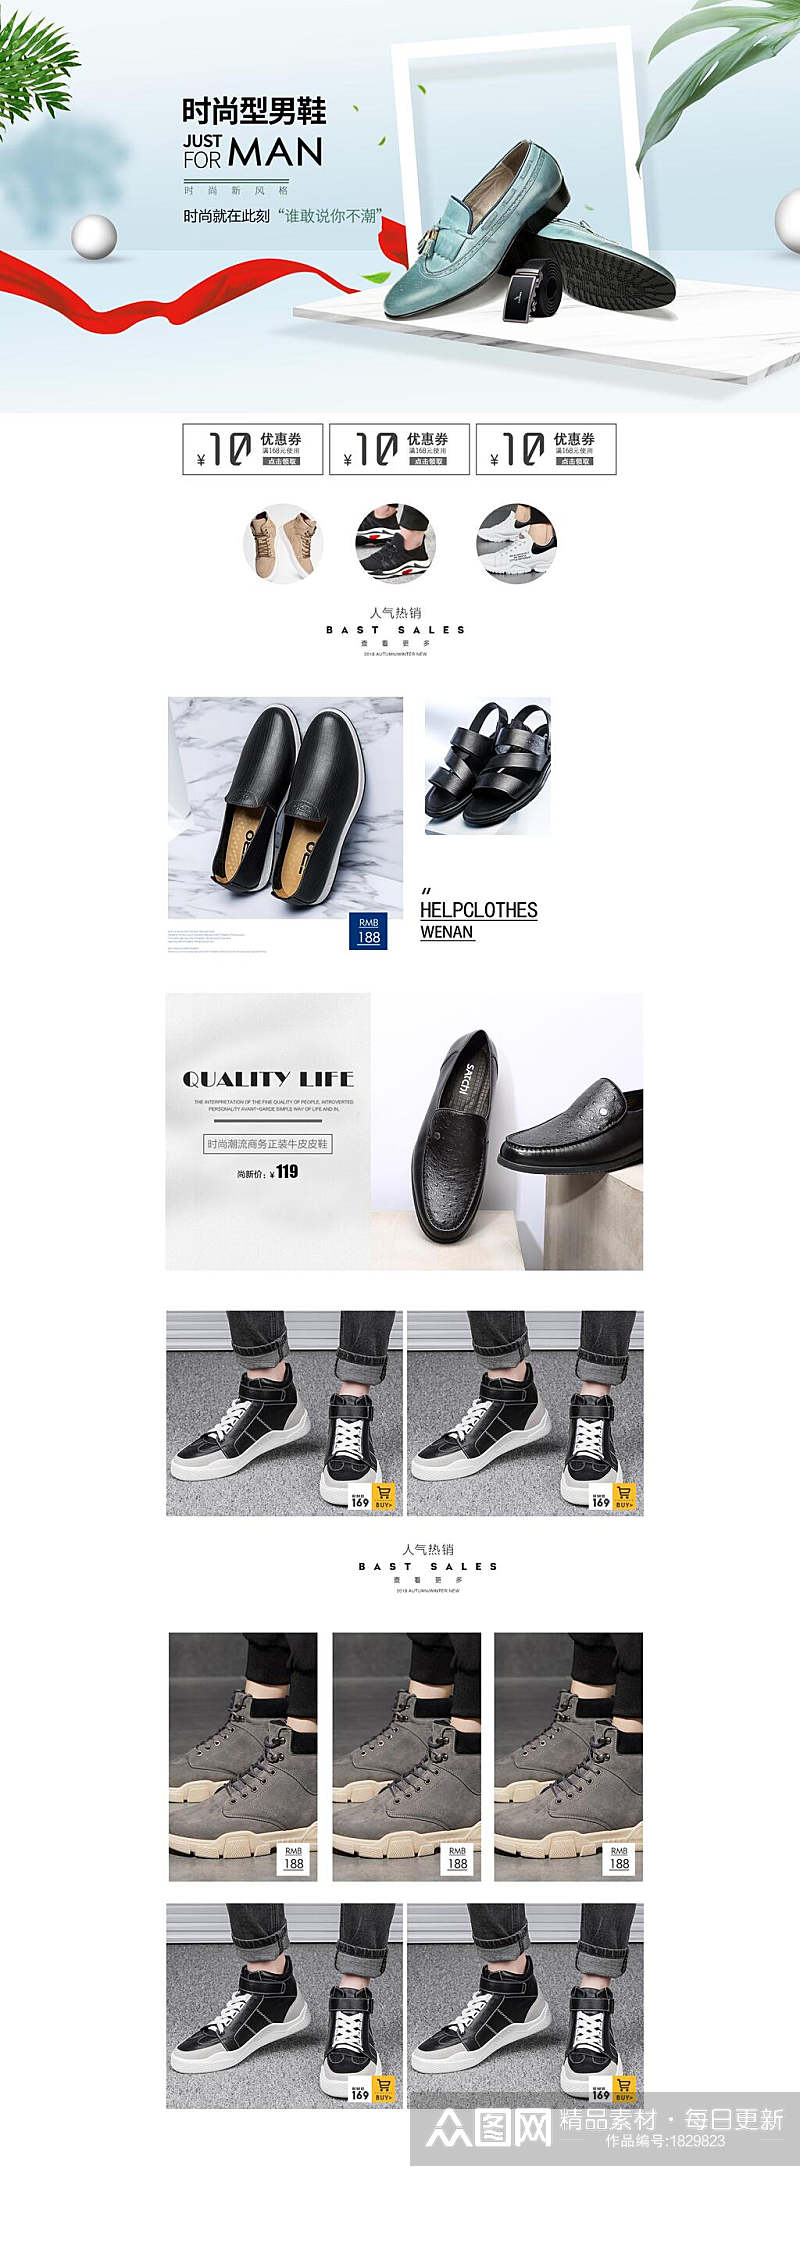 简约时尚型男鞋电商详情页面设计素材